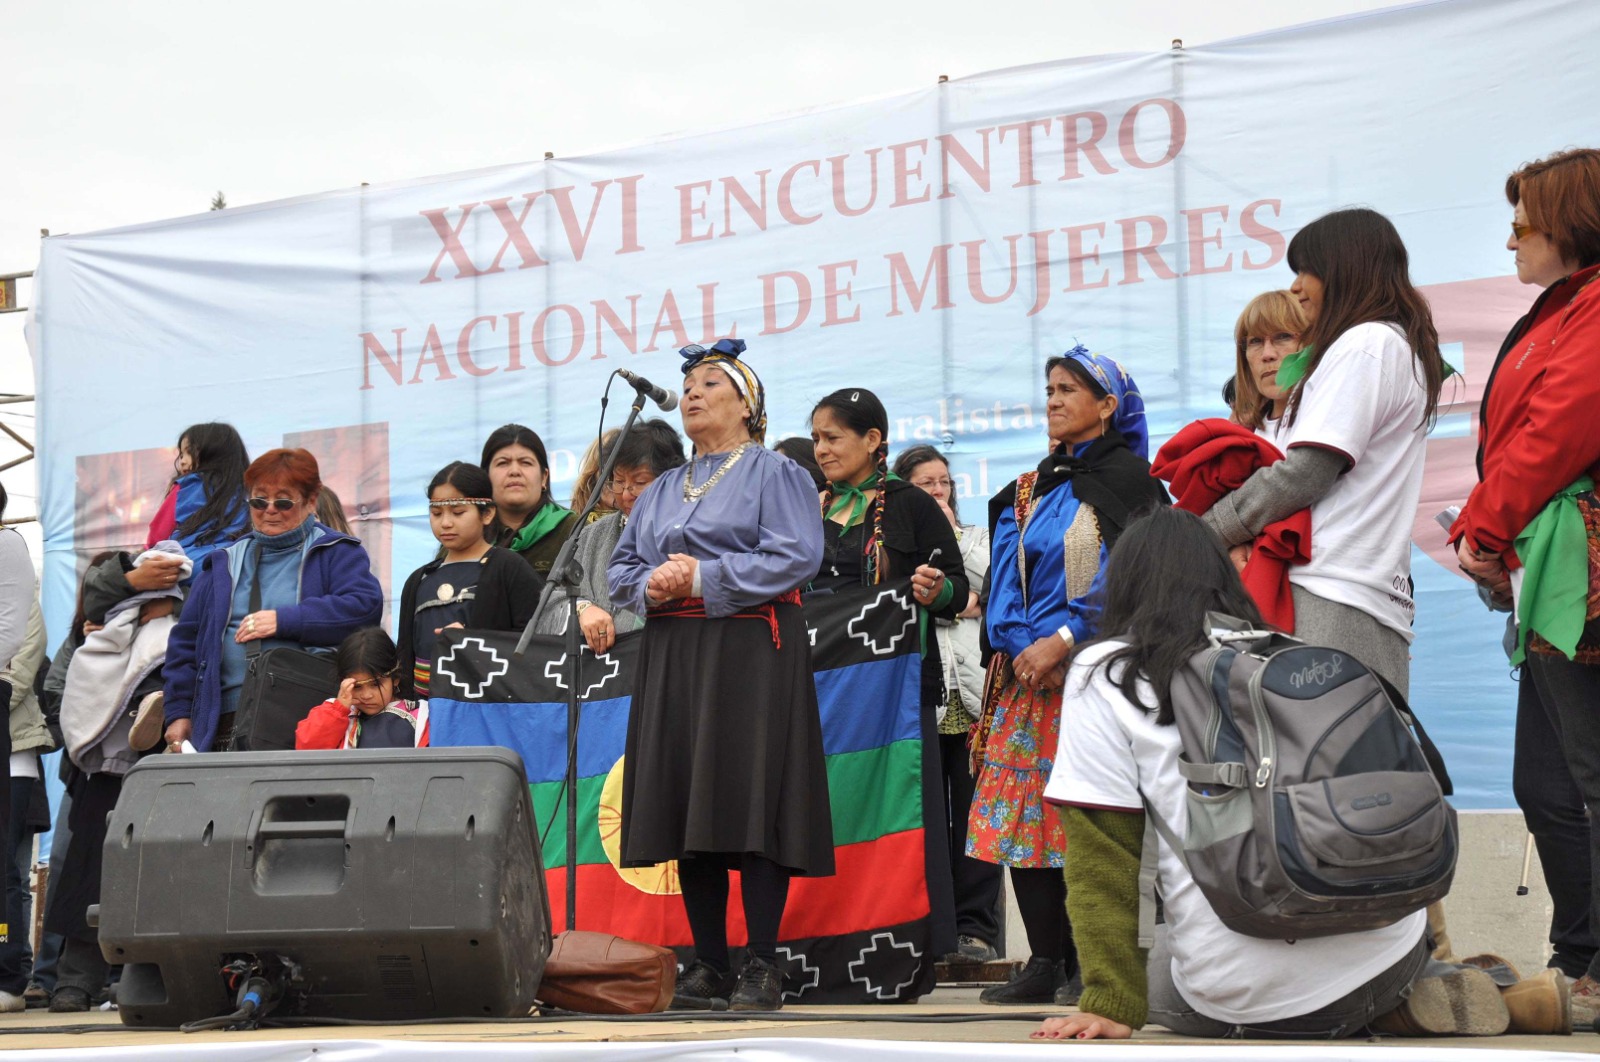 Las mujeres mapuche también estuvieron en la bienvenida del Encuentro que se realizó en 2011 en Bariloche. Ahora serán parte central de la convocatoria. Archivo